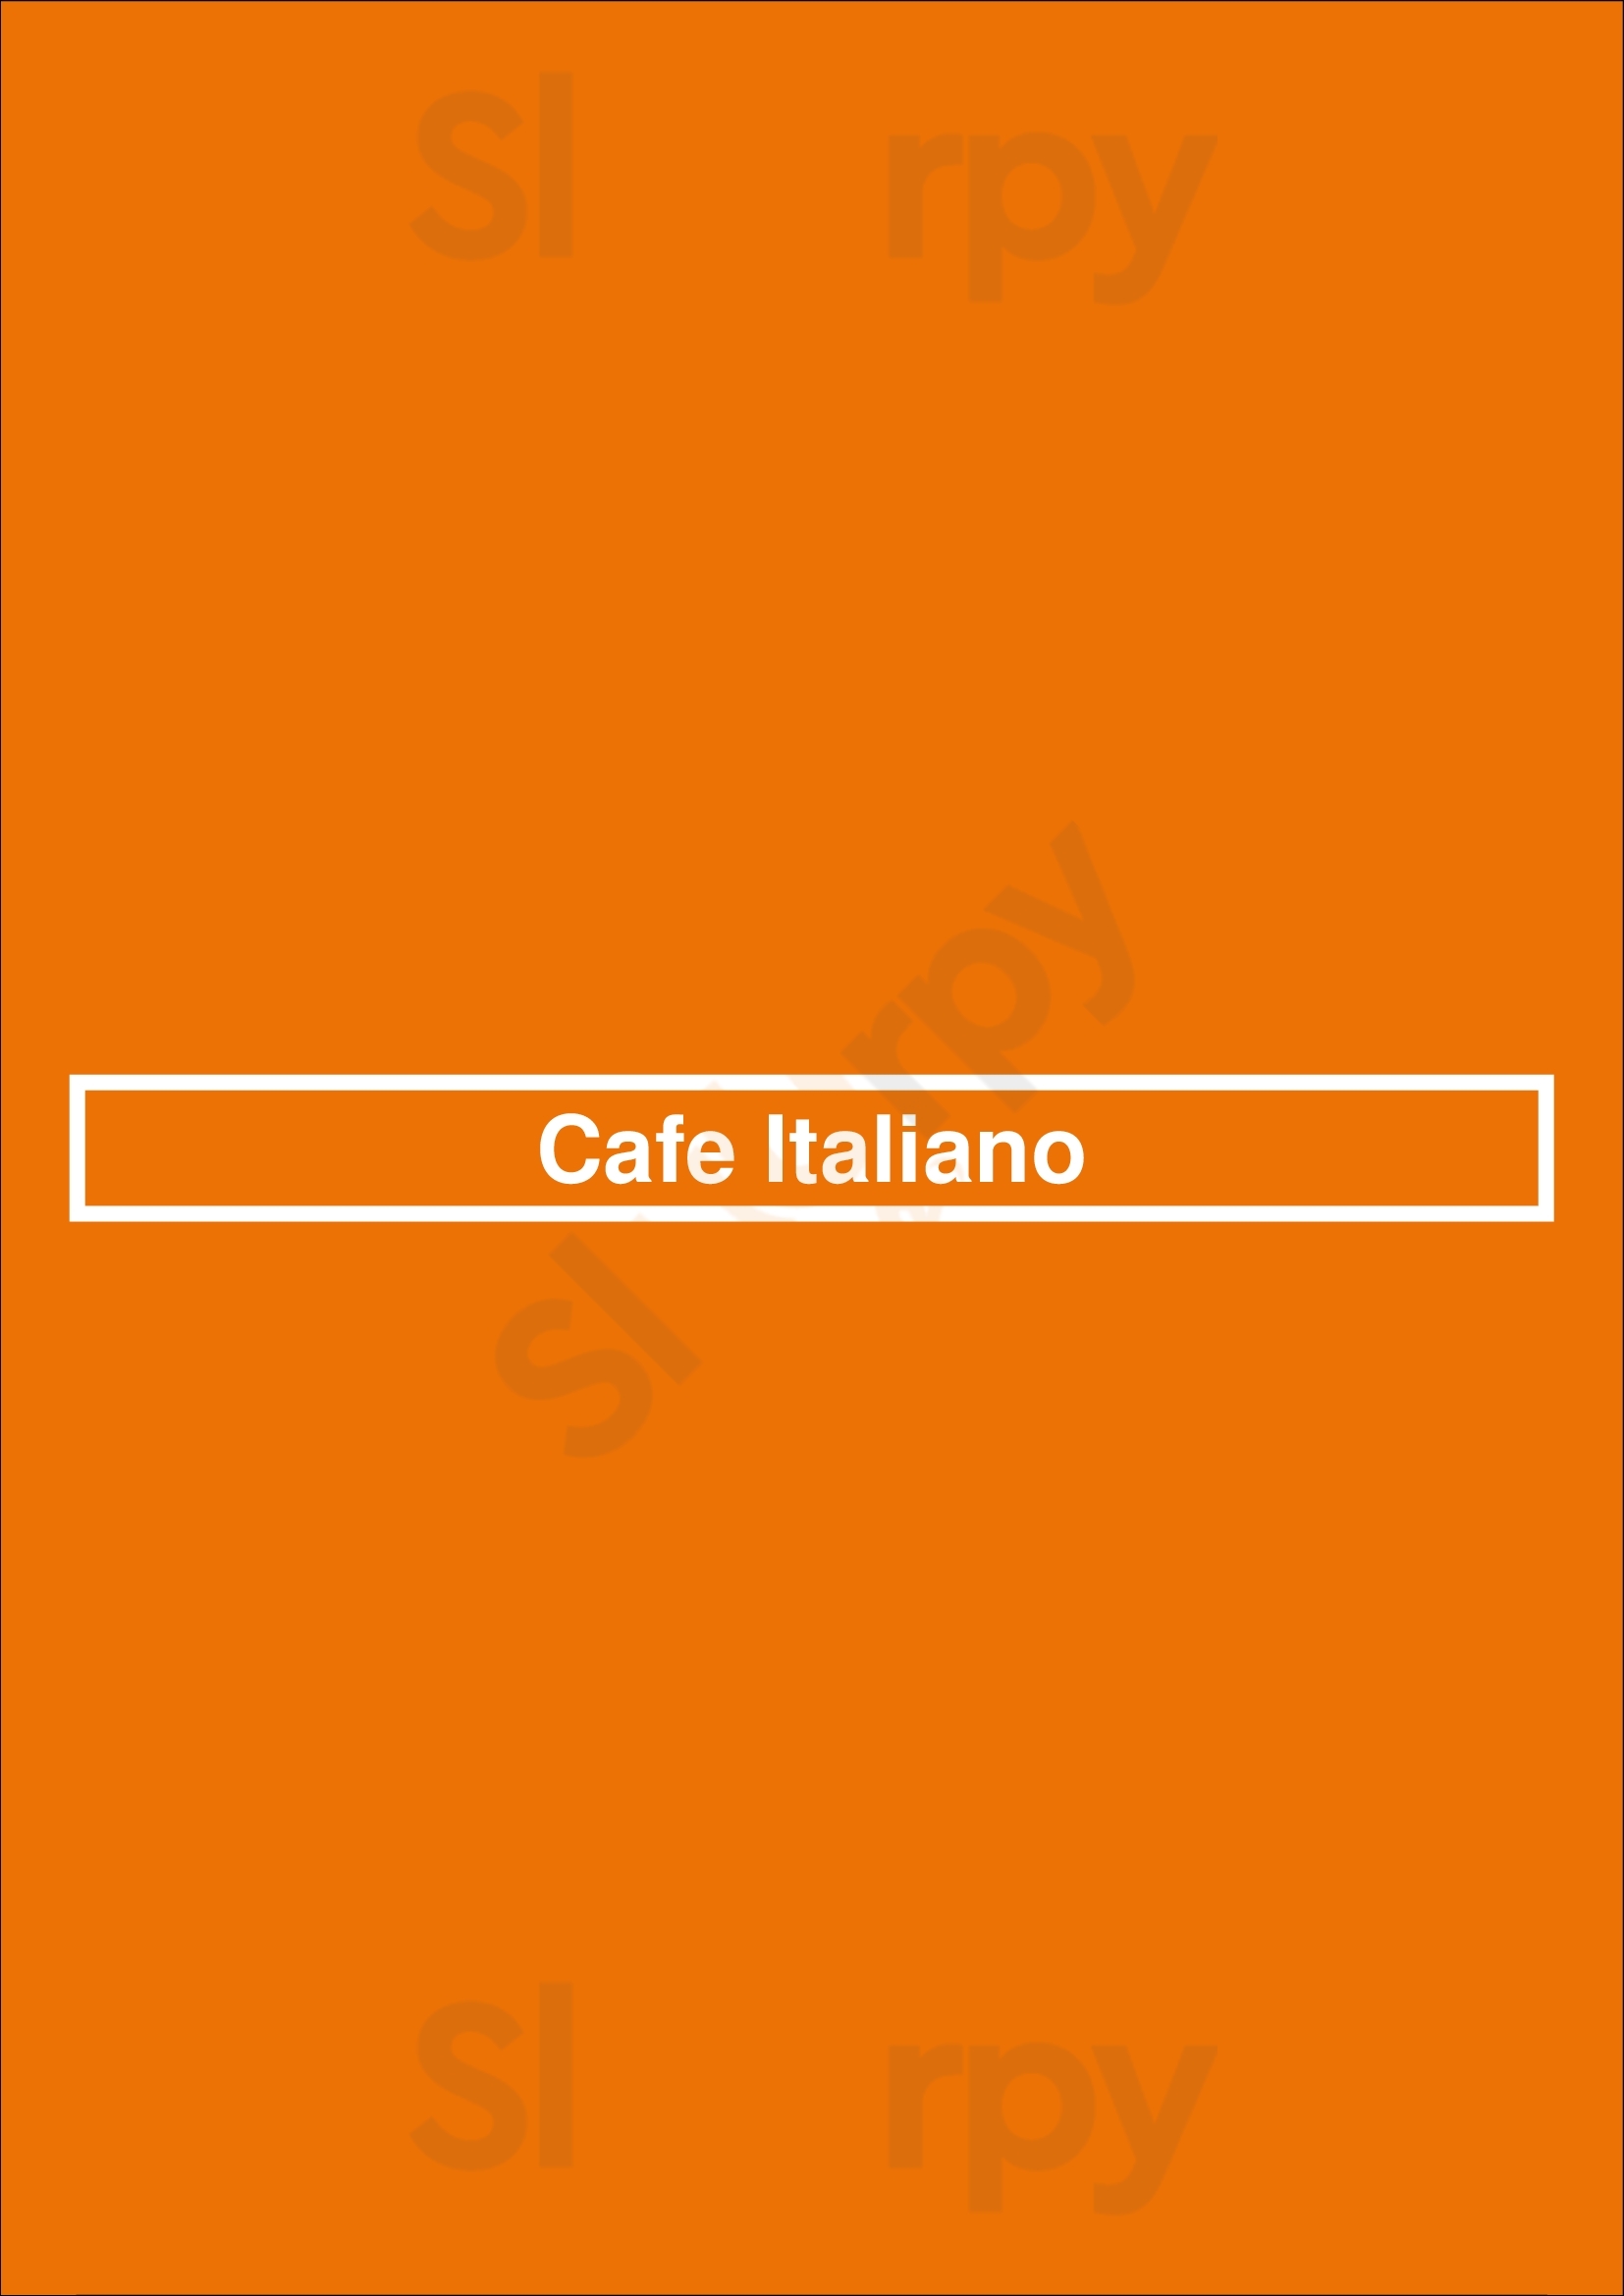 Cafe Italiano Moab Menu - 1